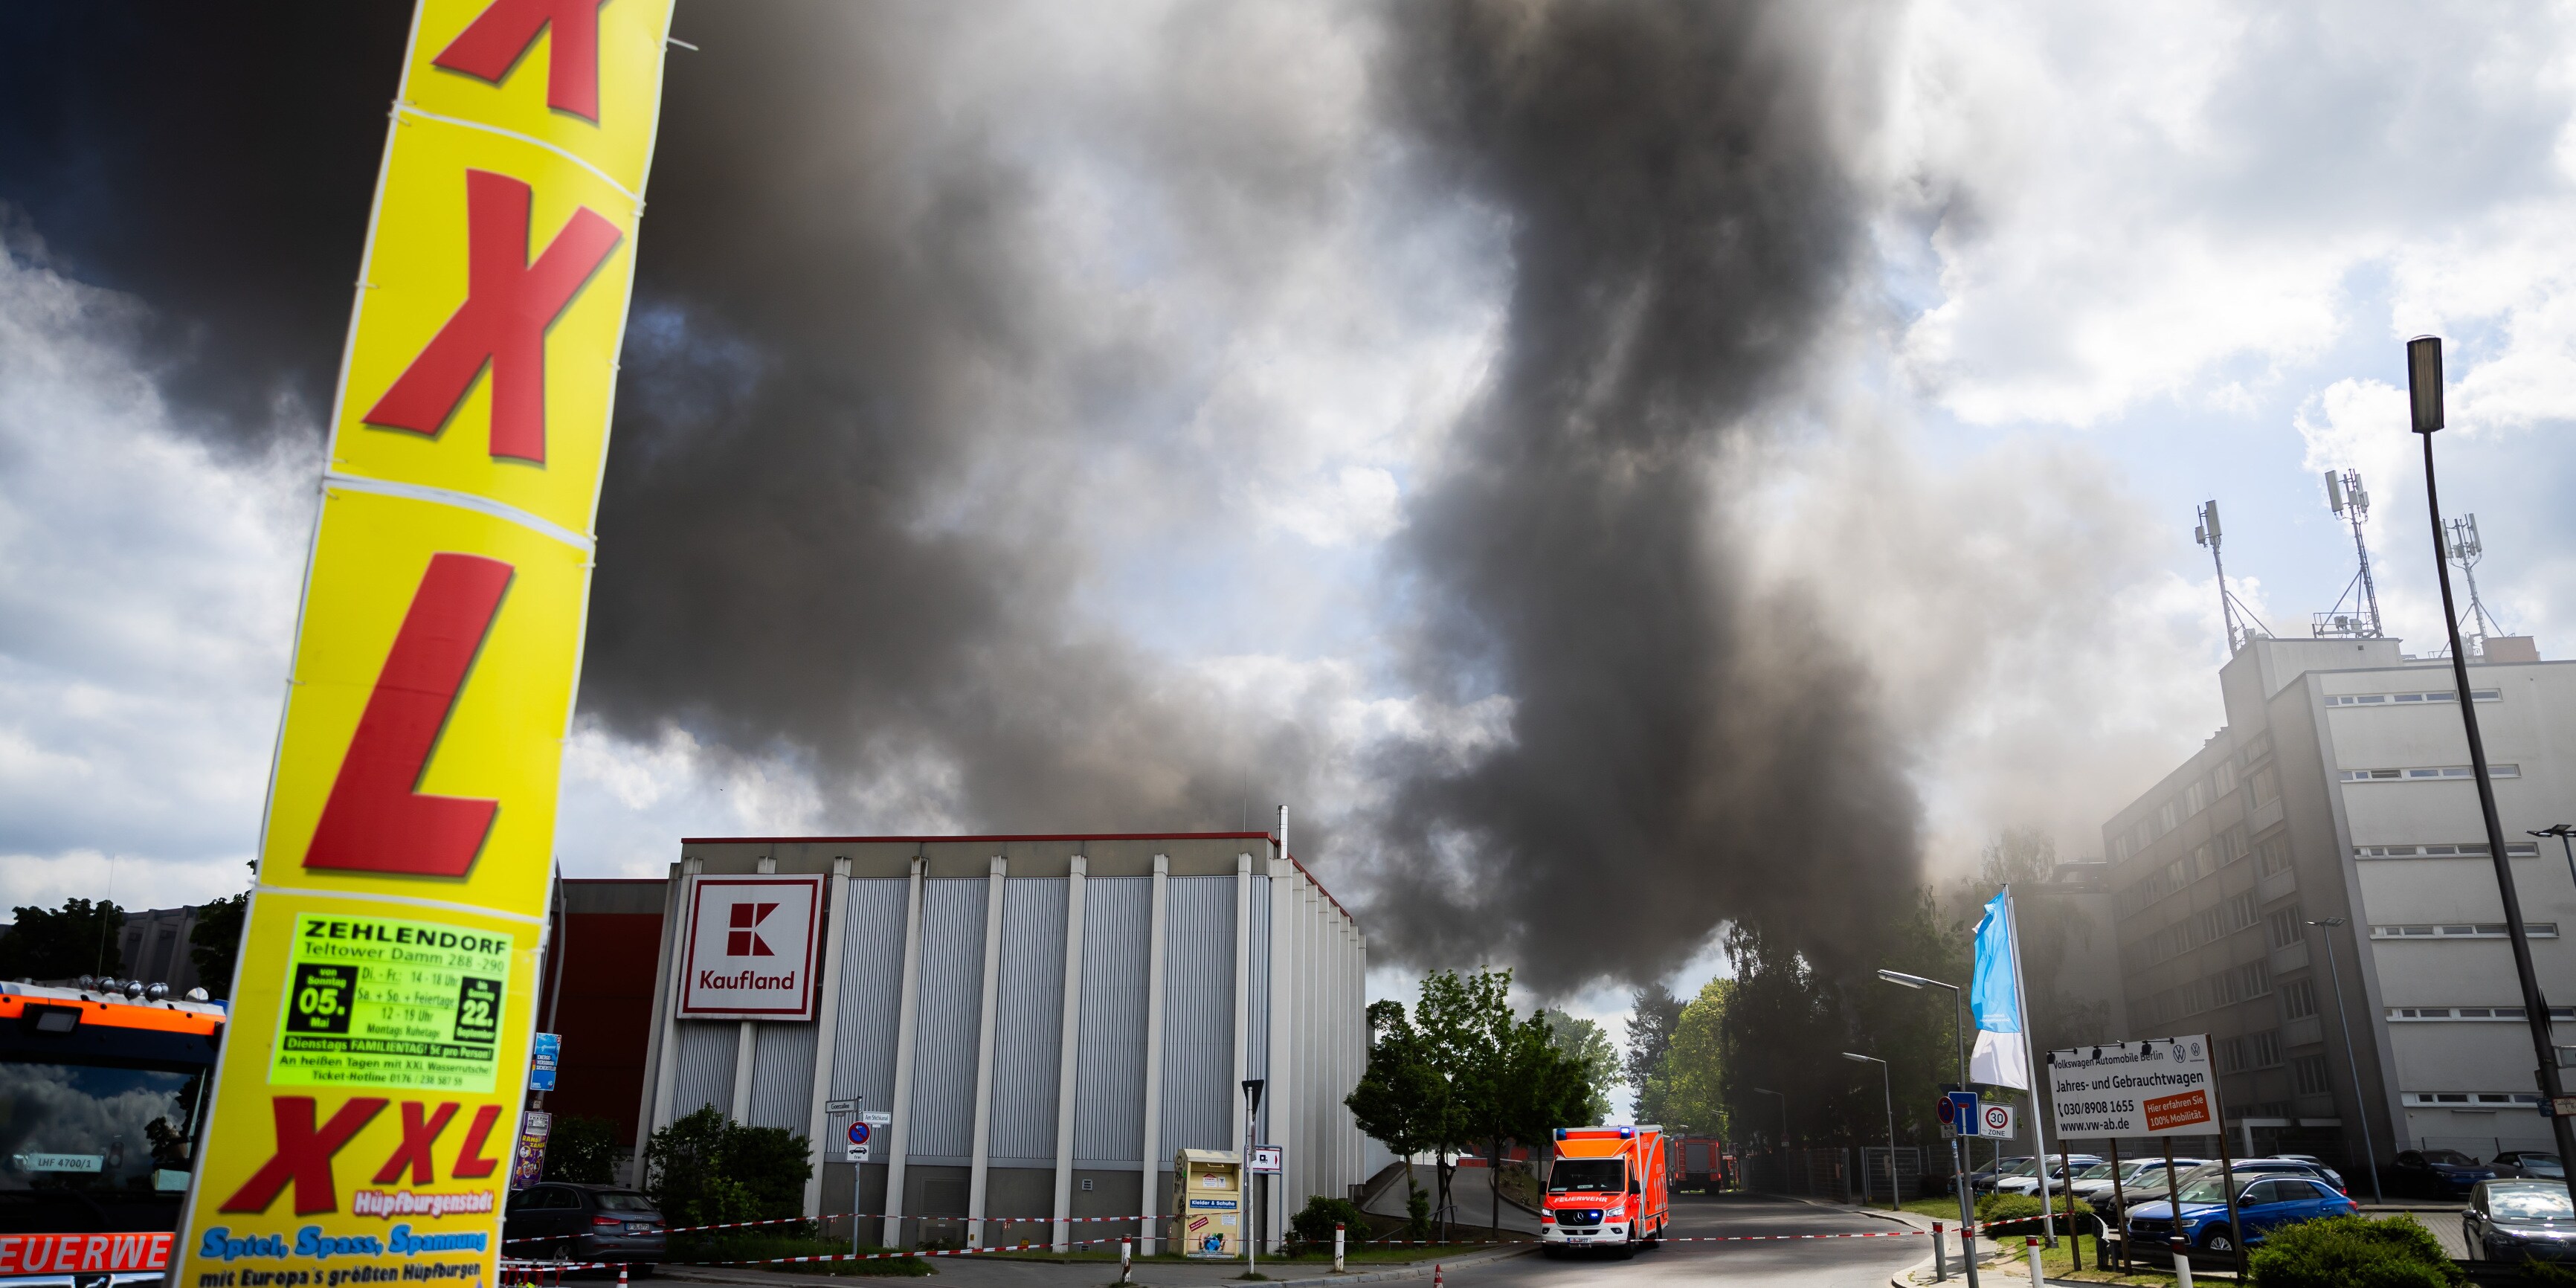 feuer bei waffenhersteller - löscharbeiten bei großbrand in berlin dauern an